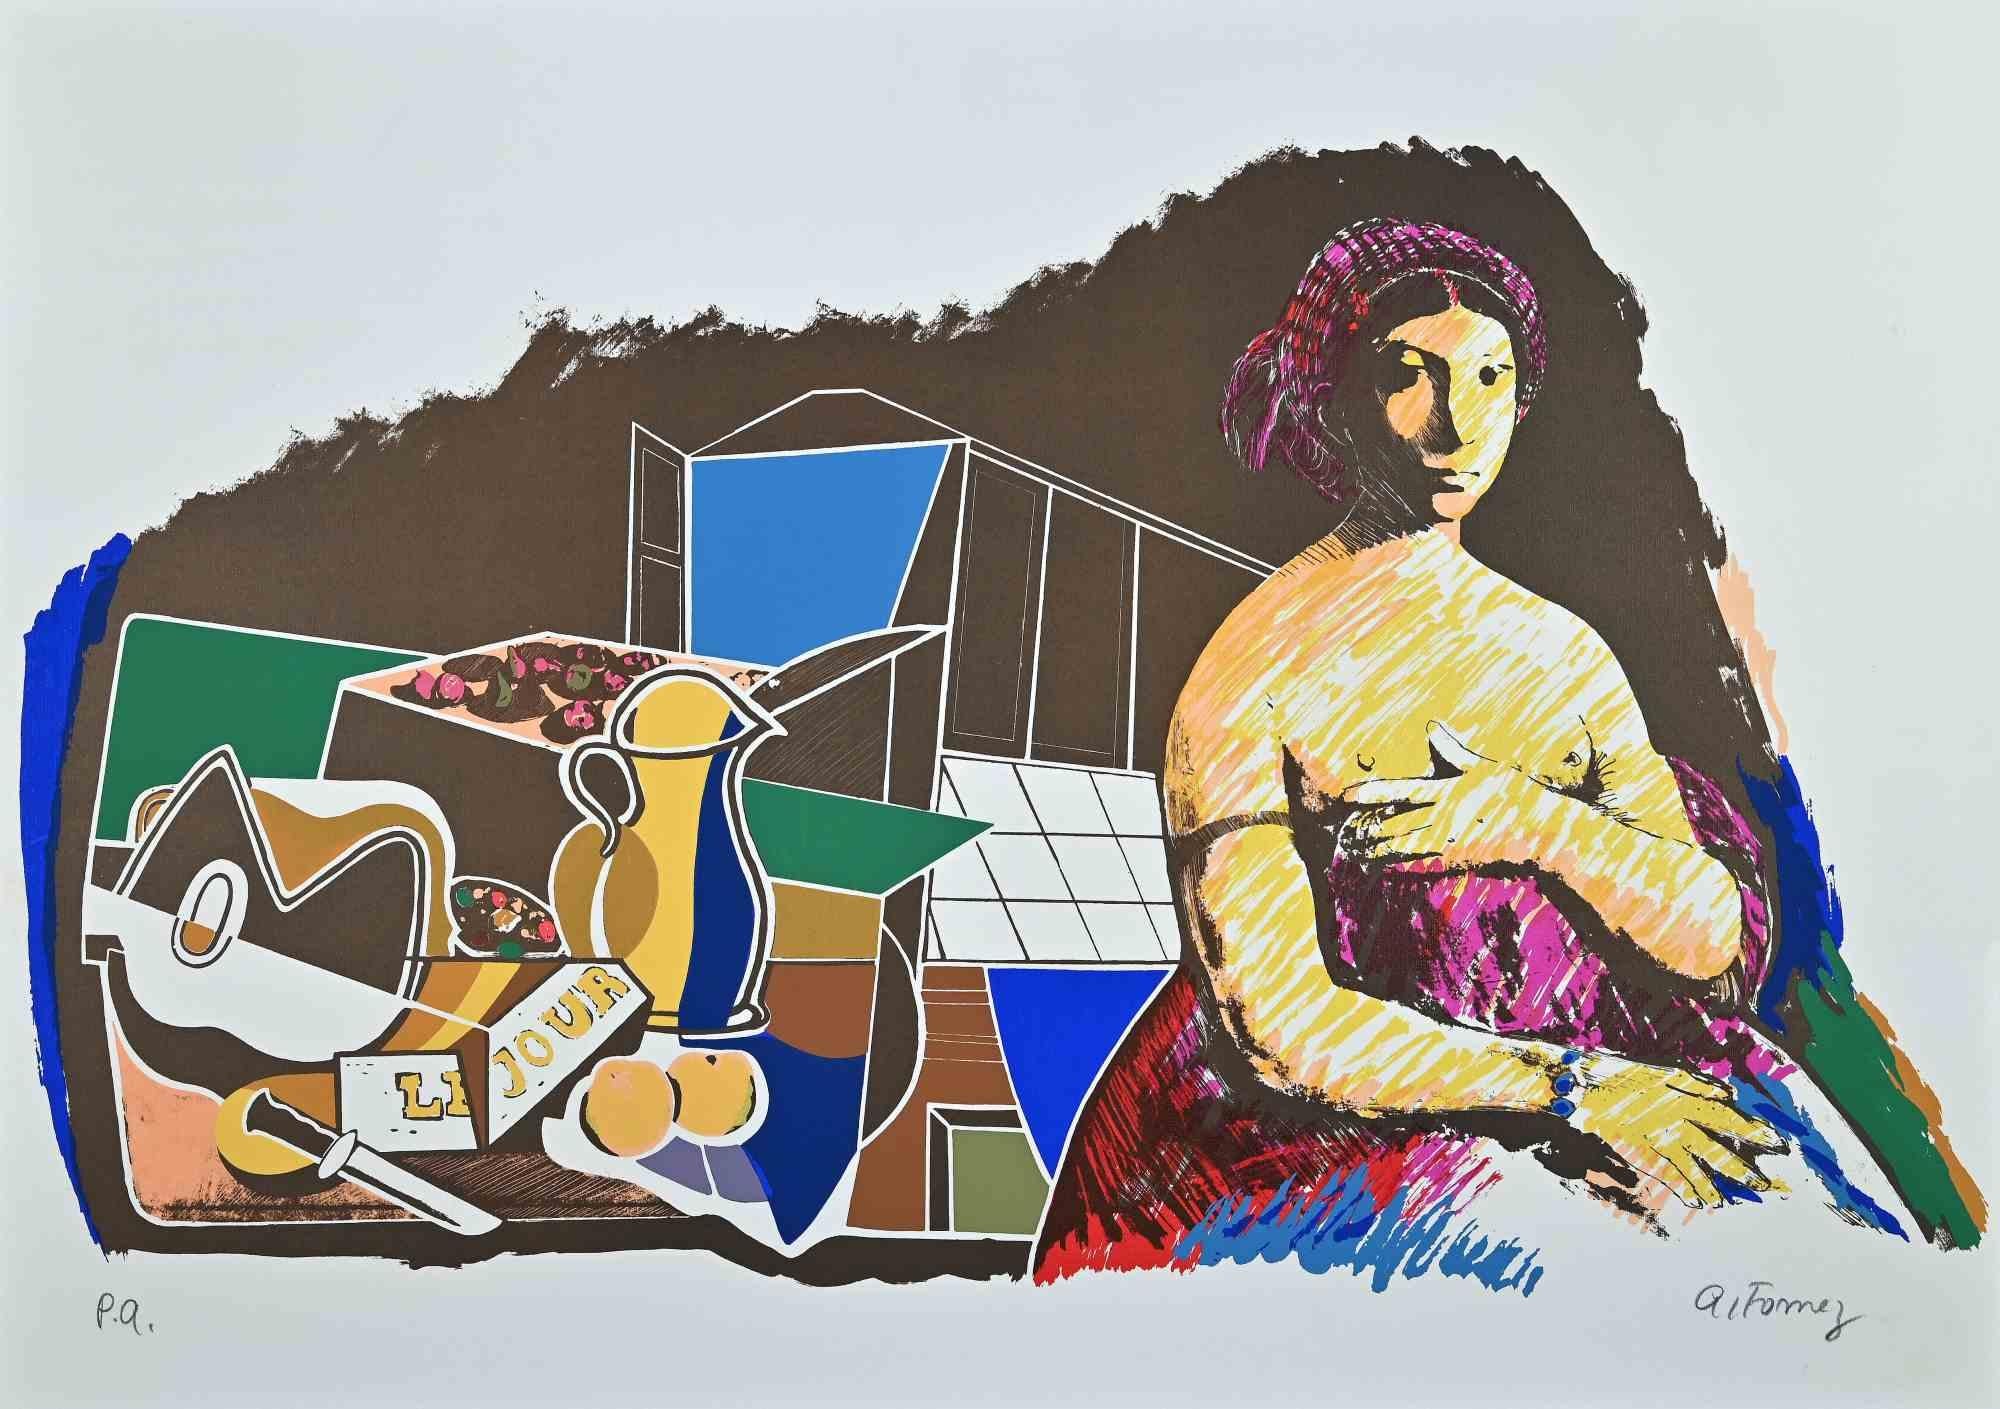 Eine farbige Lithographie von Antonio Fomez, die zwischen 1950 und 1974 entworfen wurde .

Handsigniert mit Bleistift unten rechts.  Künstlerischer Beweis  (links unten links mit Bleistift handgeschrieben).

Gute Bedingungen.

Das Kunstwerk ist eine